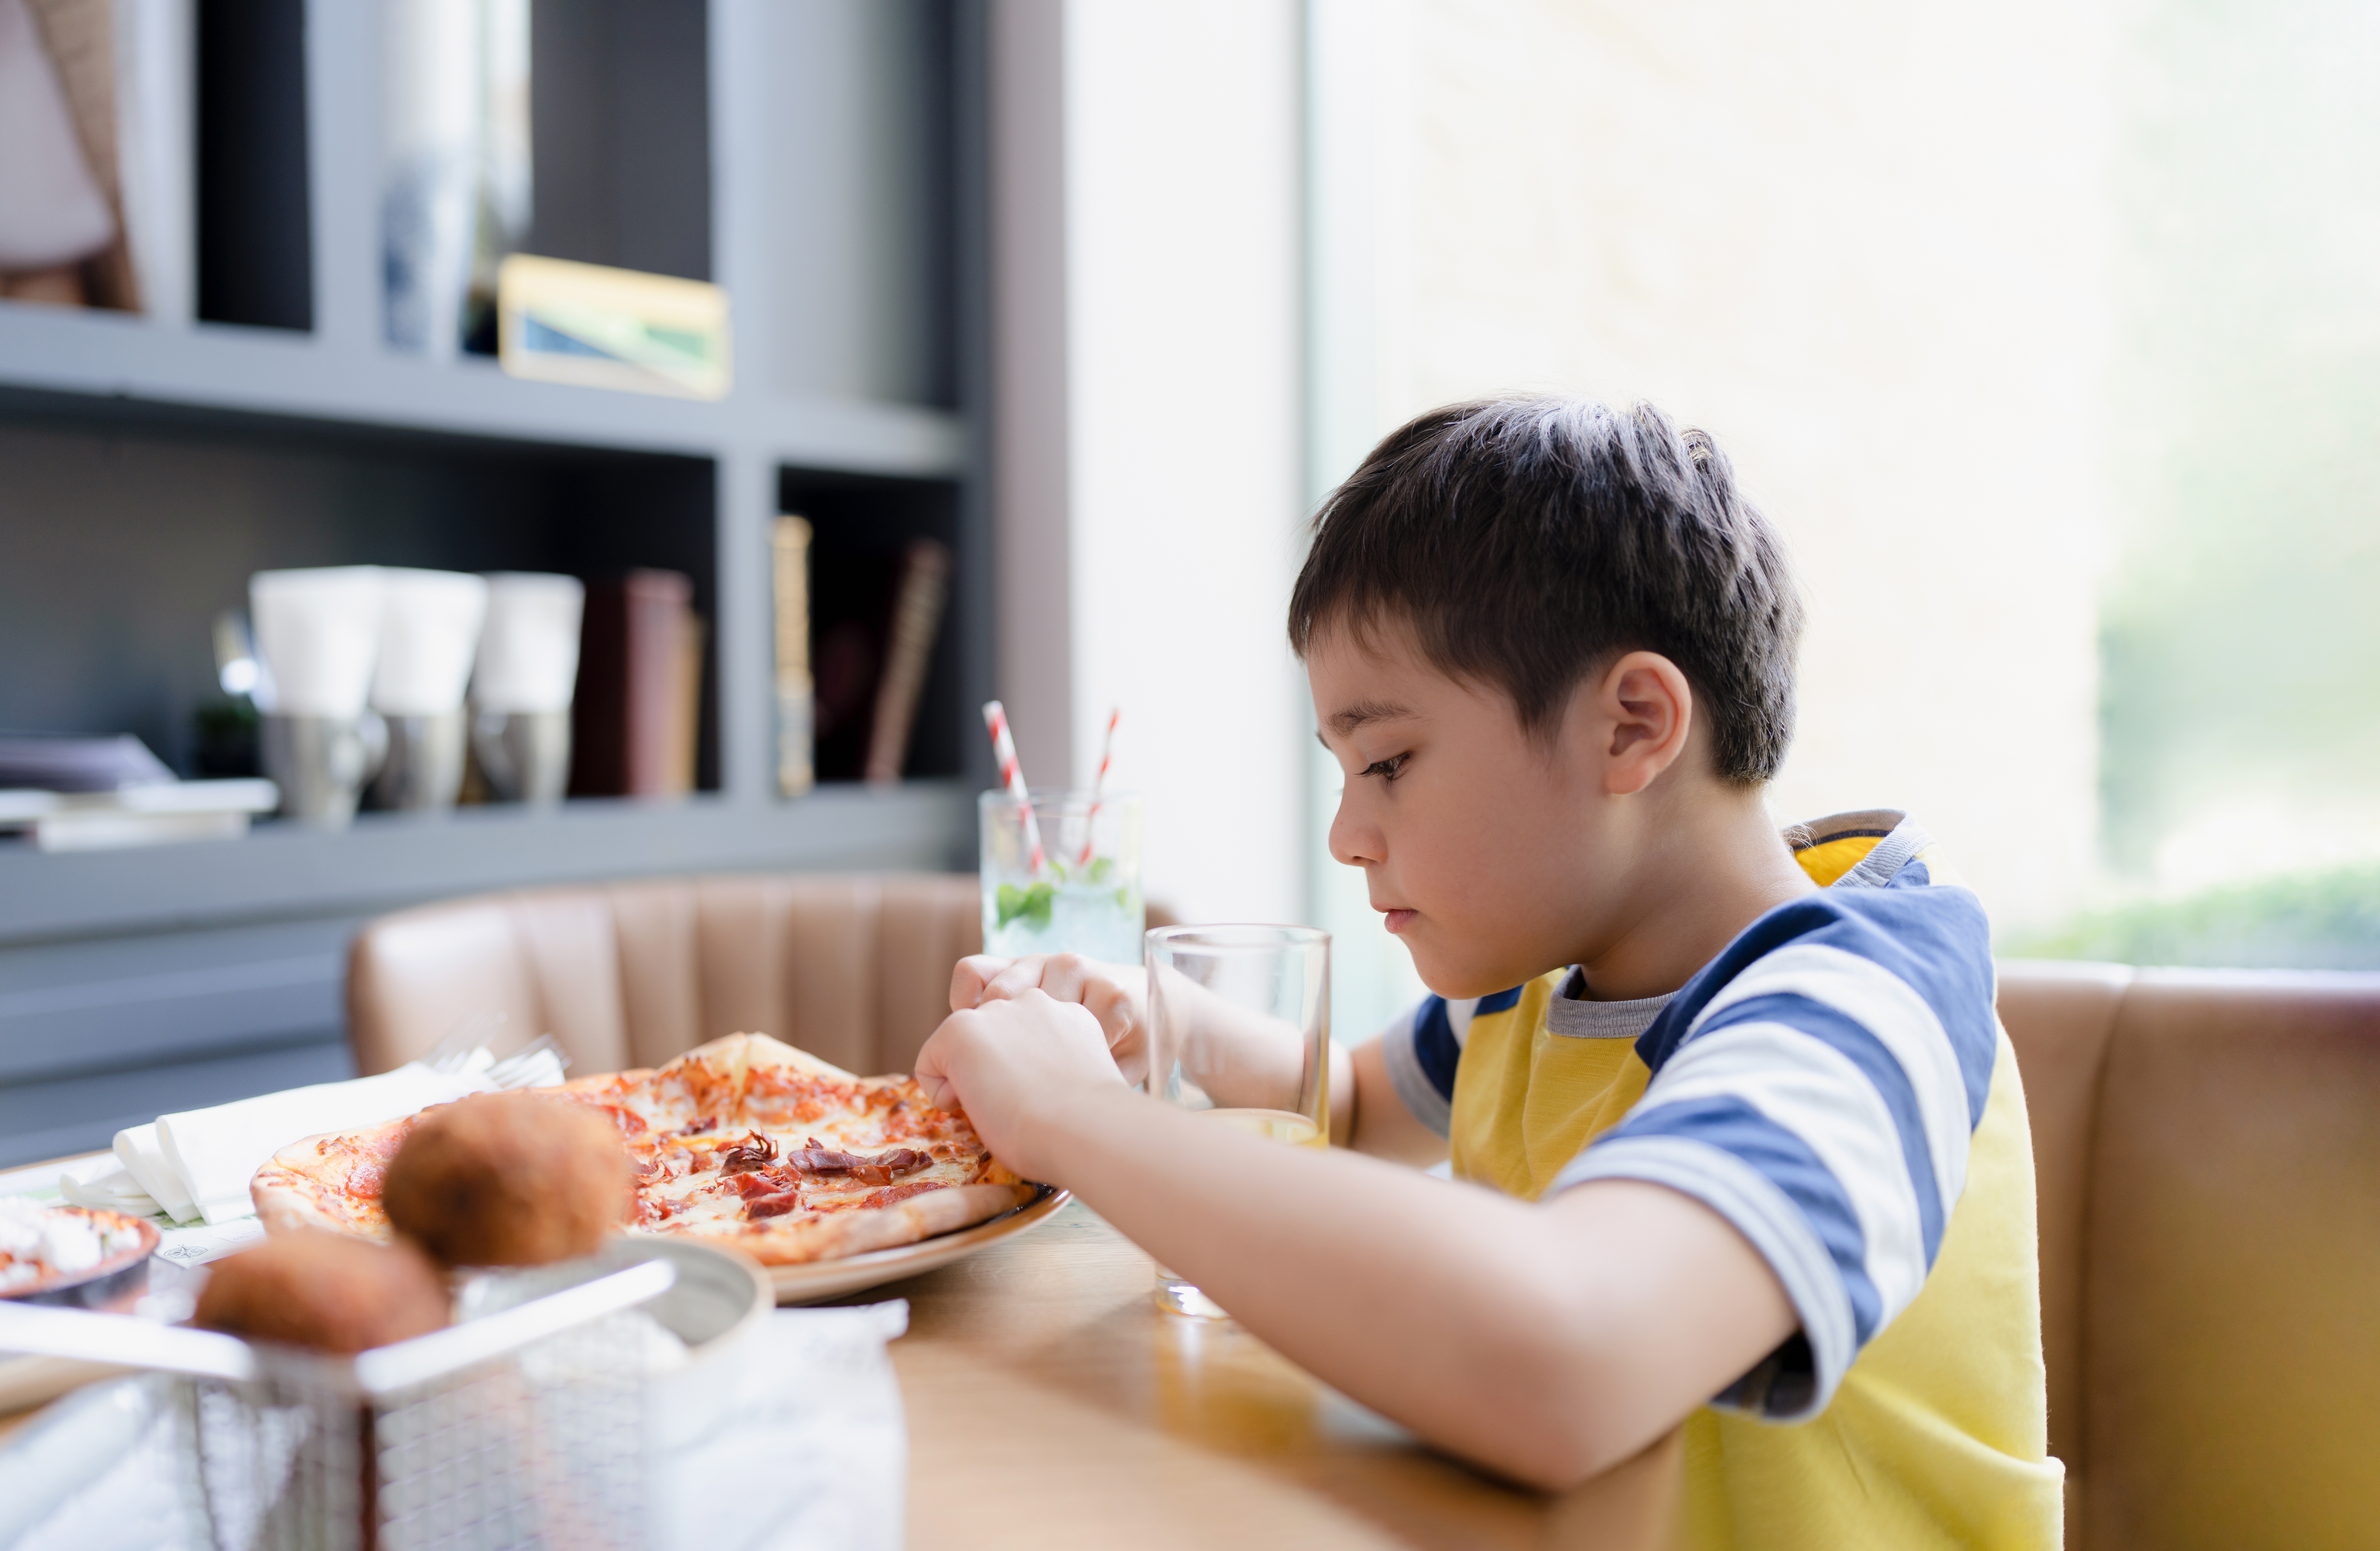 Garçon mangeant une pizza | Source : Shutterstock